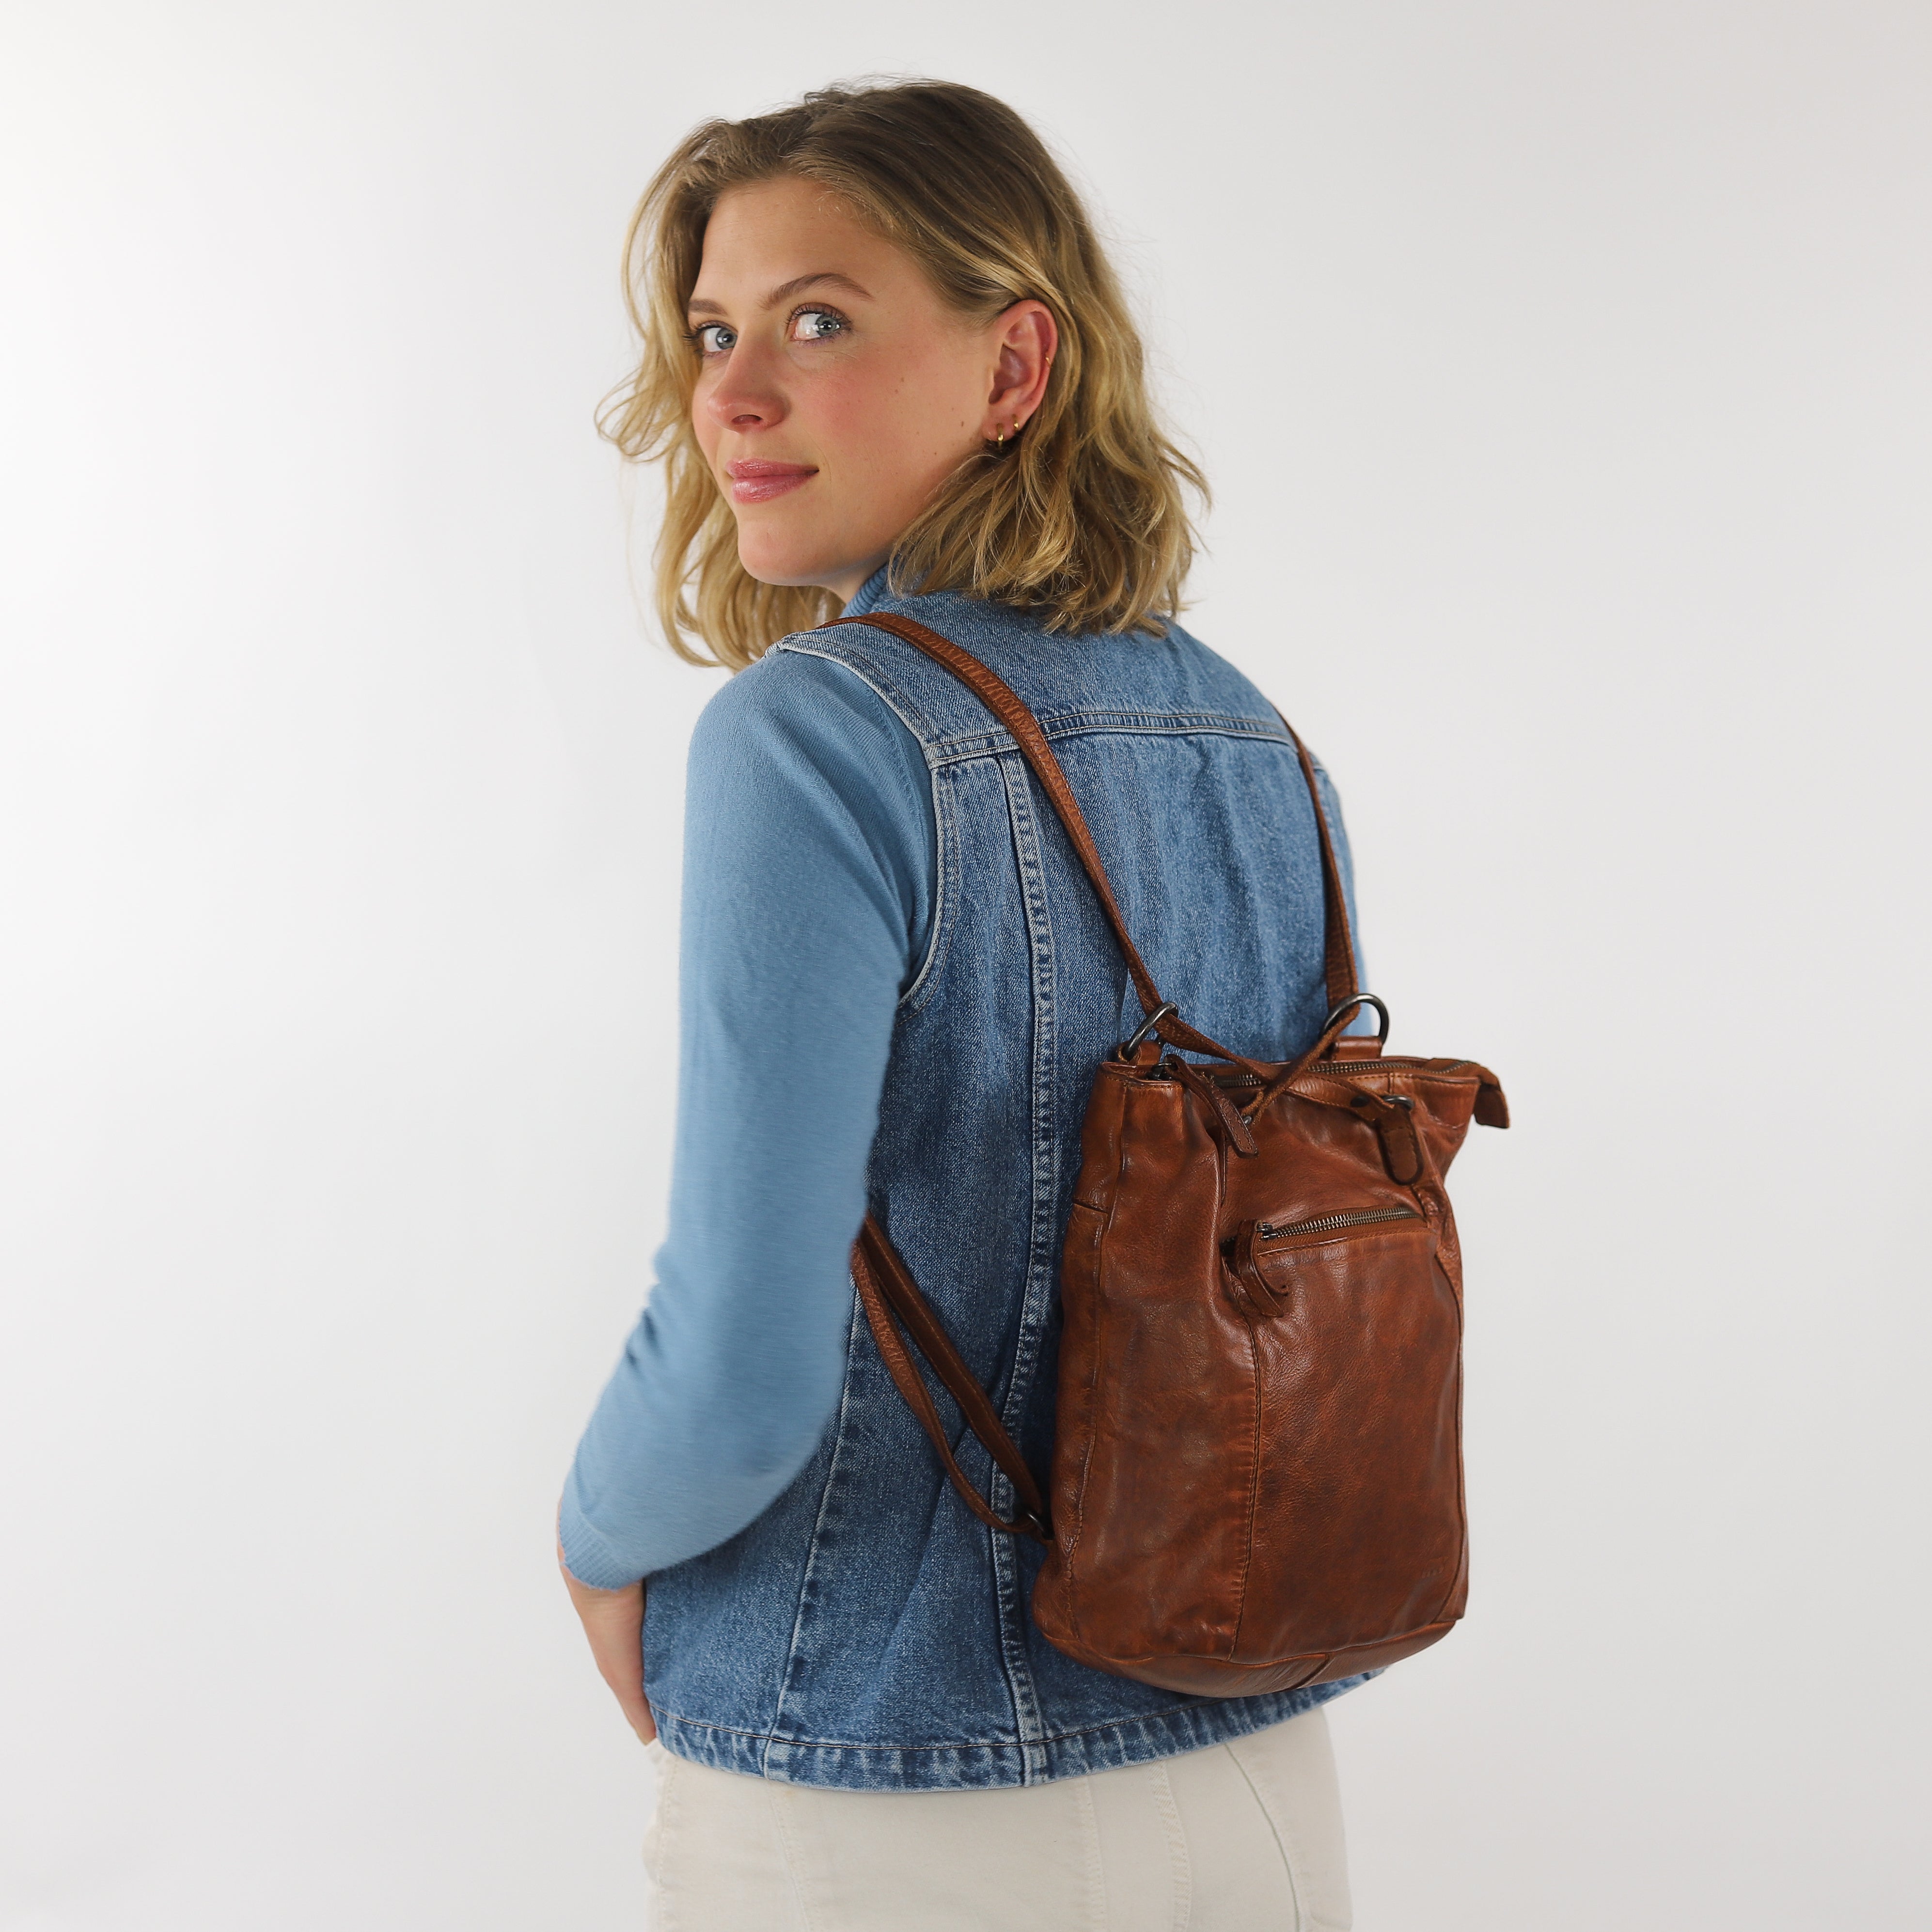 Backpack/shoulder bag 'Sandy' cognac - CL 40273